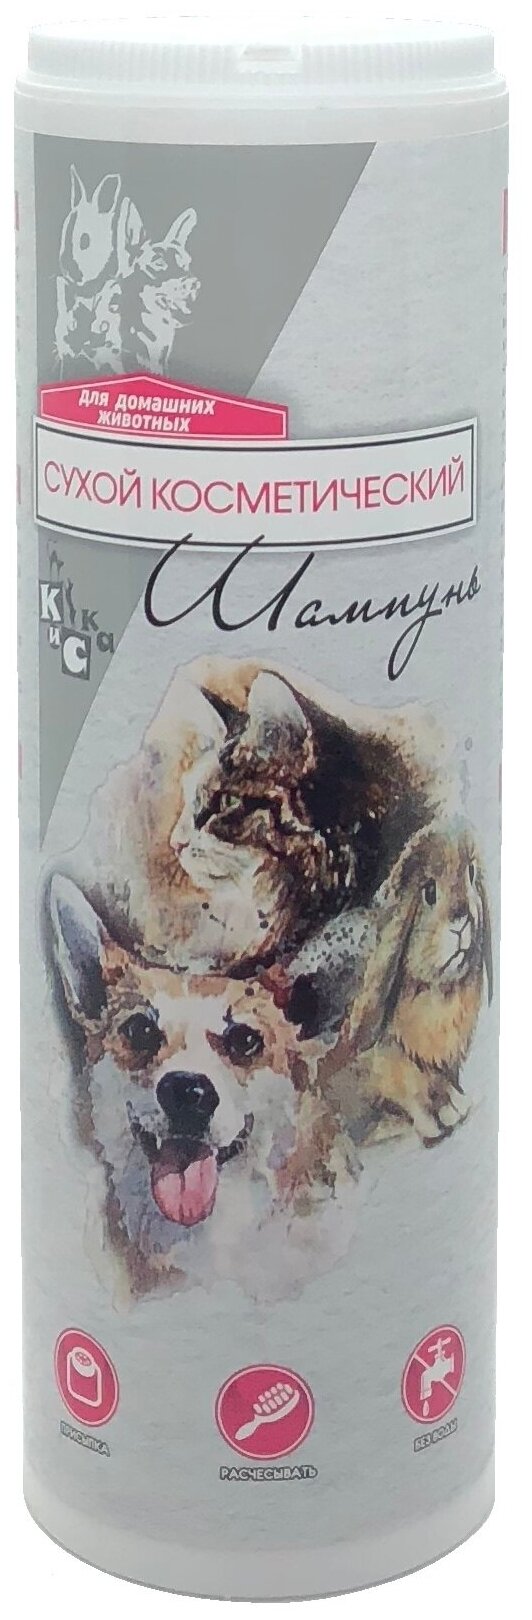 Сухой гигиенический зоошампунь КиСка для кошек, собак, кроликов и м.свинок 150гр. 2010